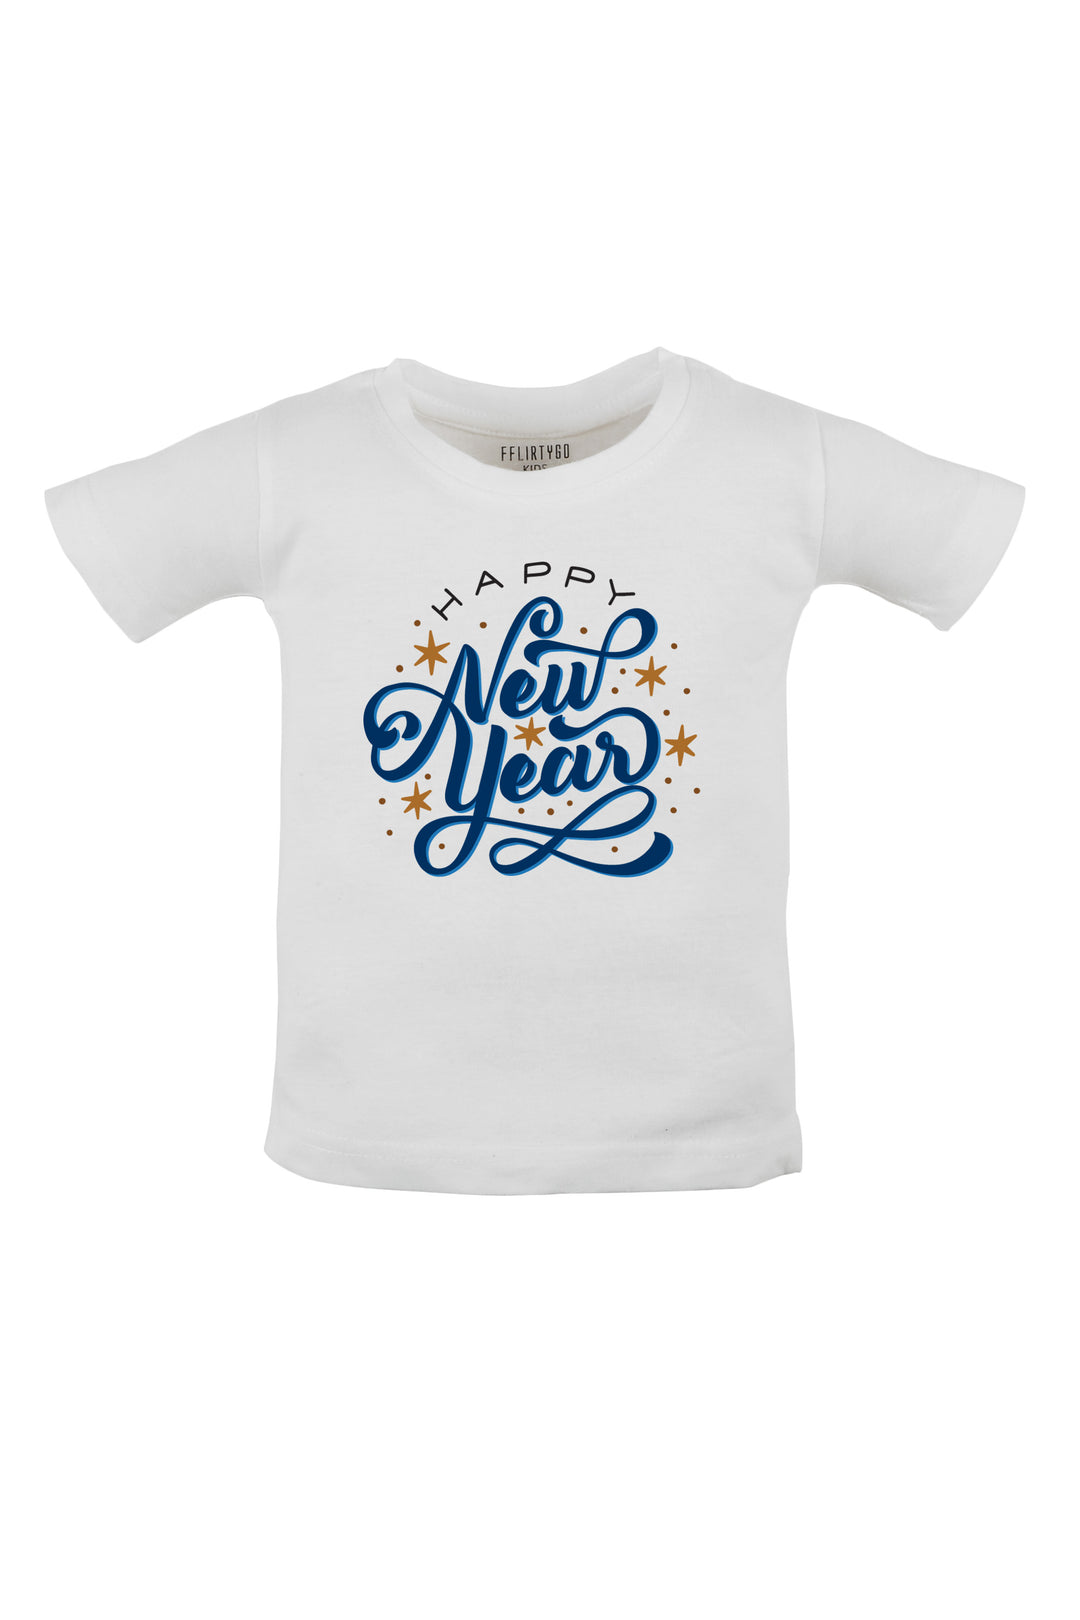 Happy New Year Kids T Shirt